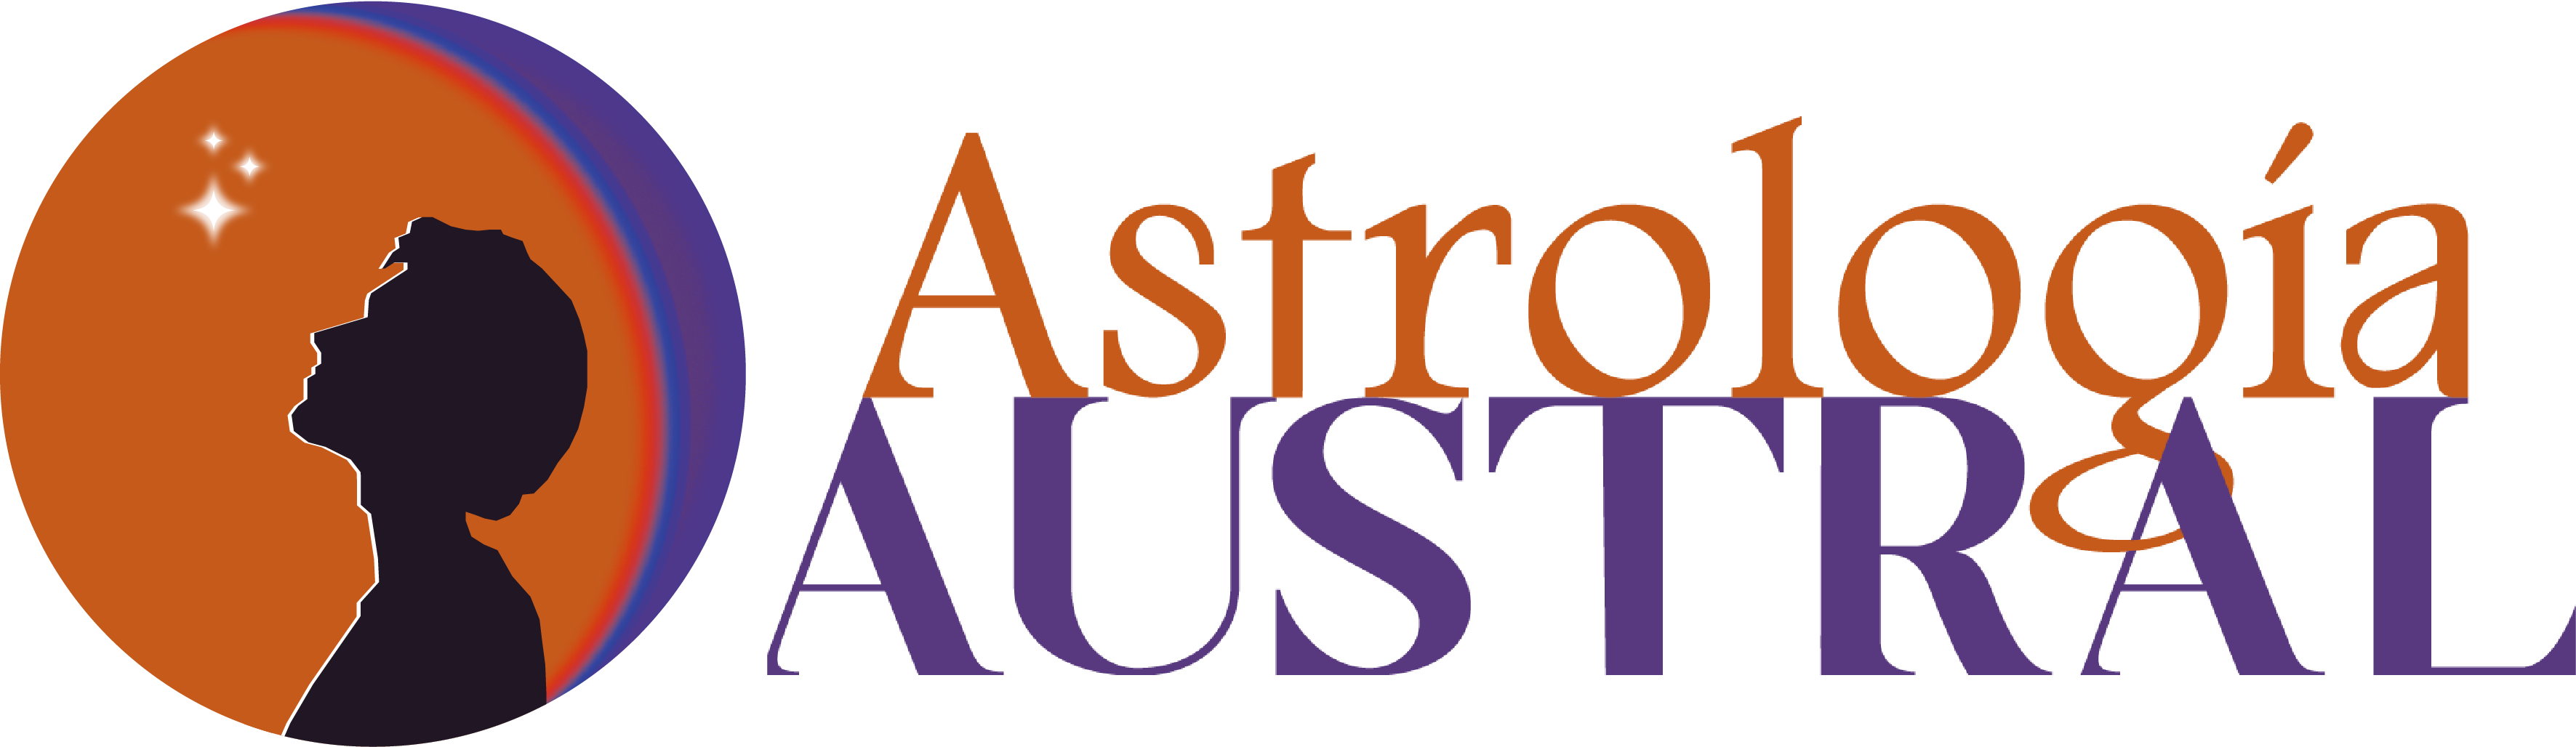 Campus Centro Astrología Austral